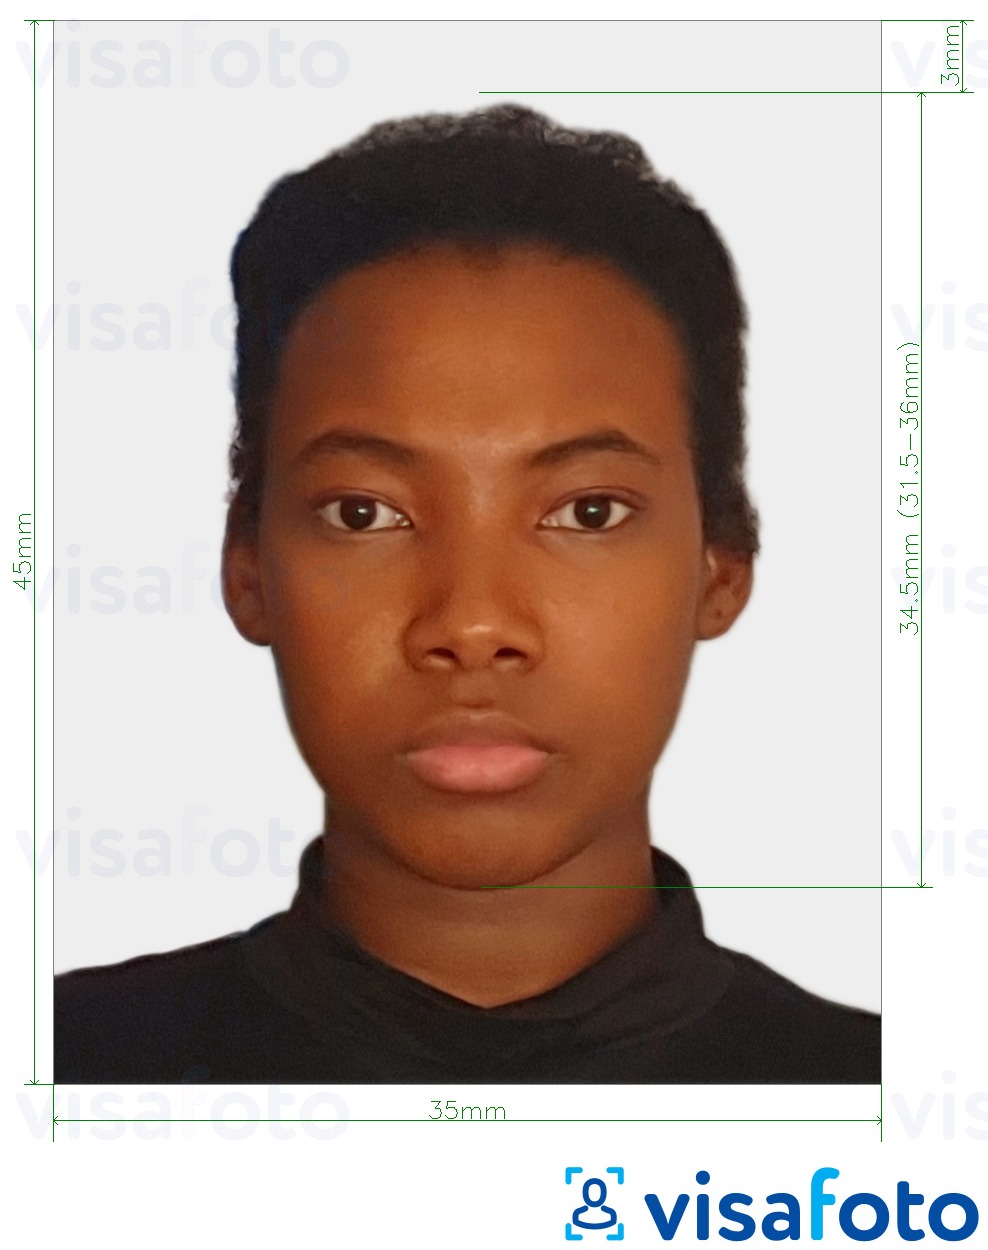 Exemplo de foto para Passaporte da África do Sul 35x45 mm (3.5x4.5 cm) com especificação exata de dimensão